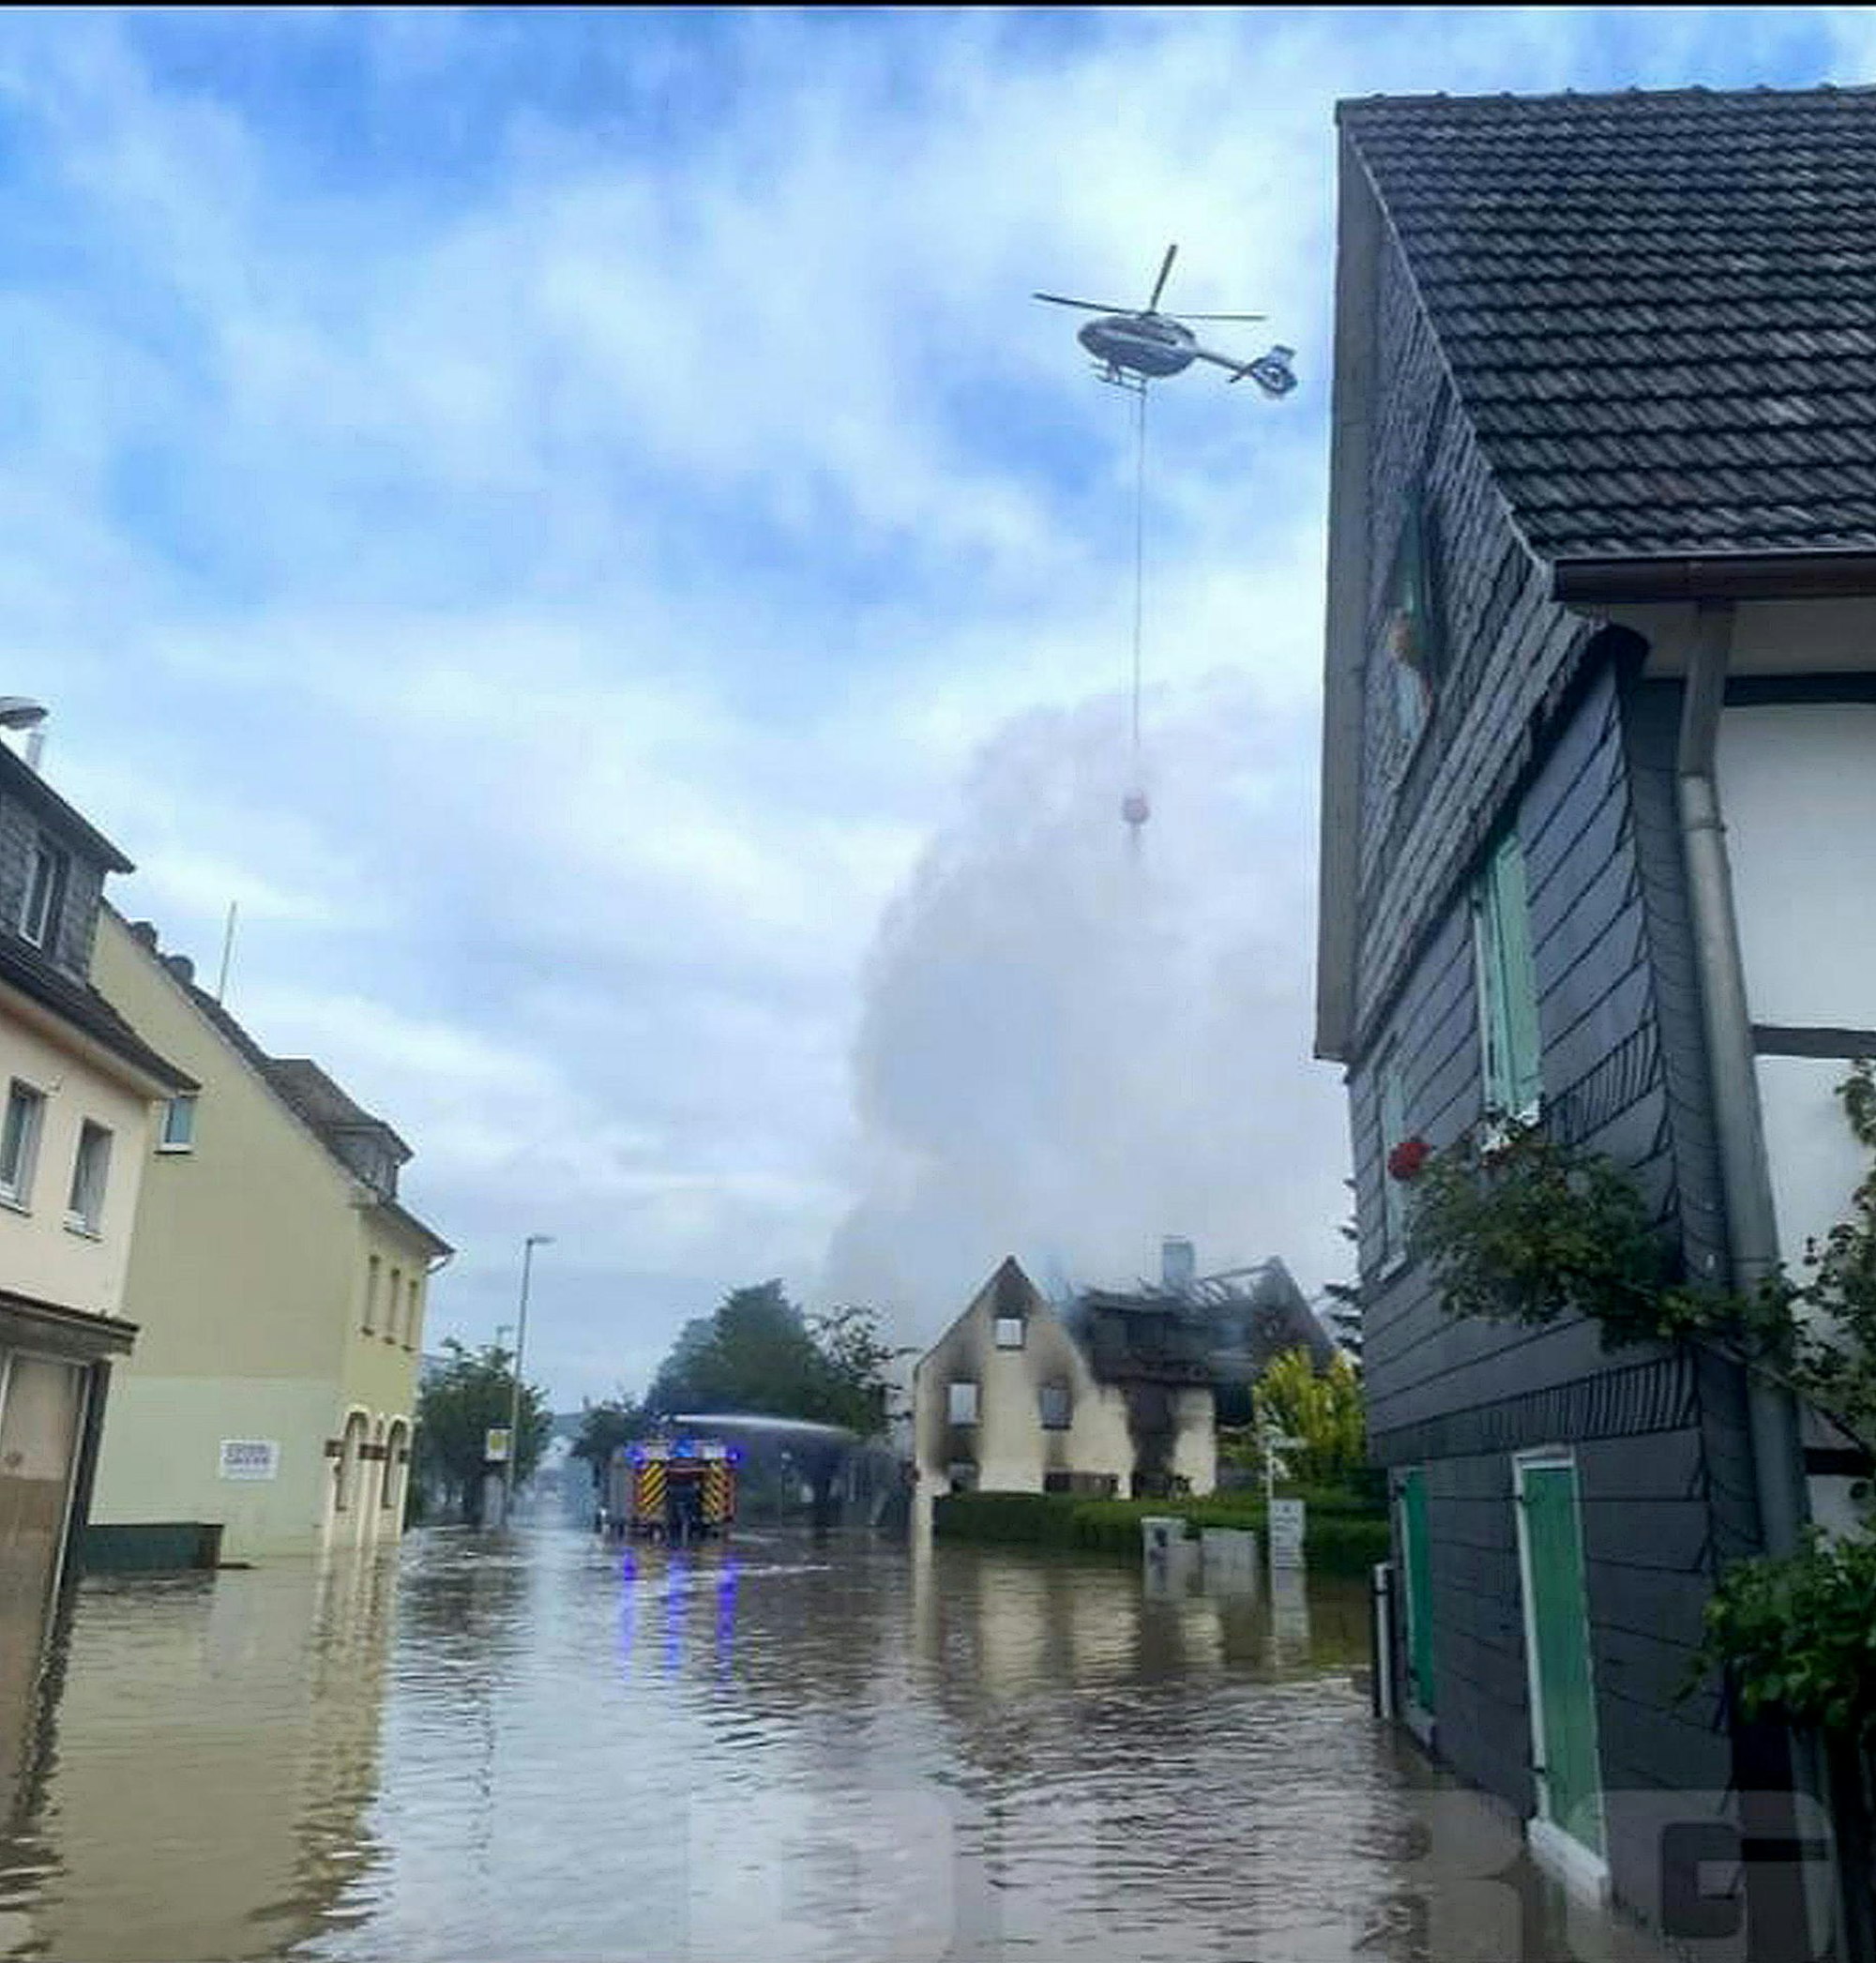 Lösch-Hubschrauber über dem brennenden Haus.